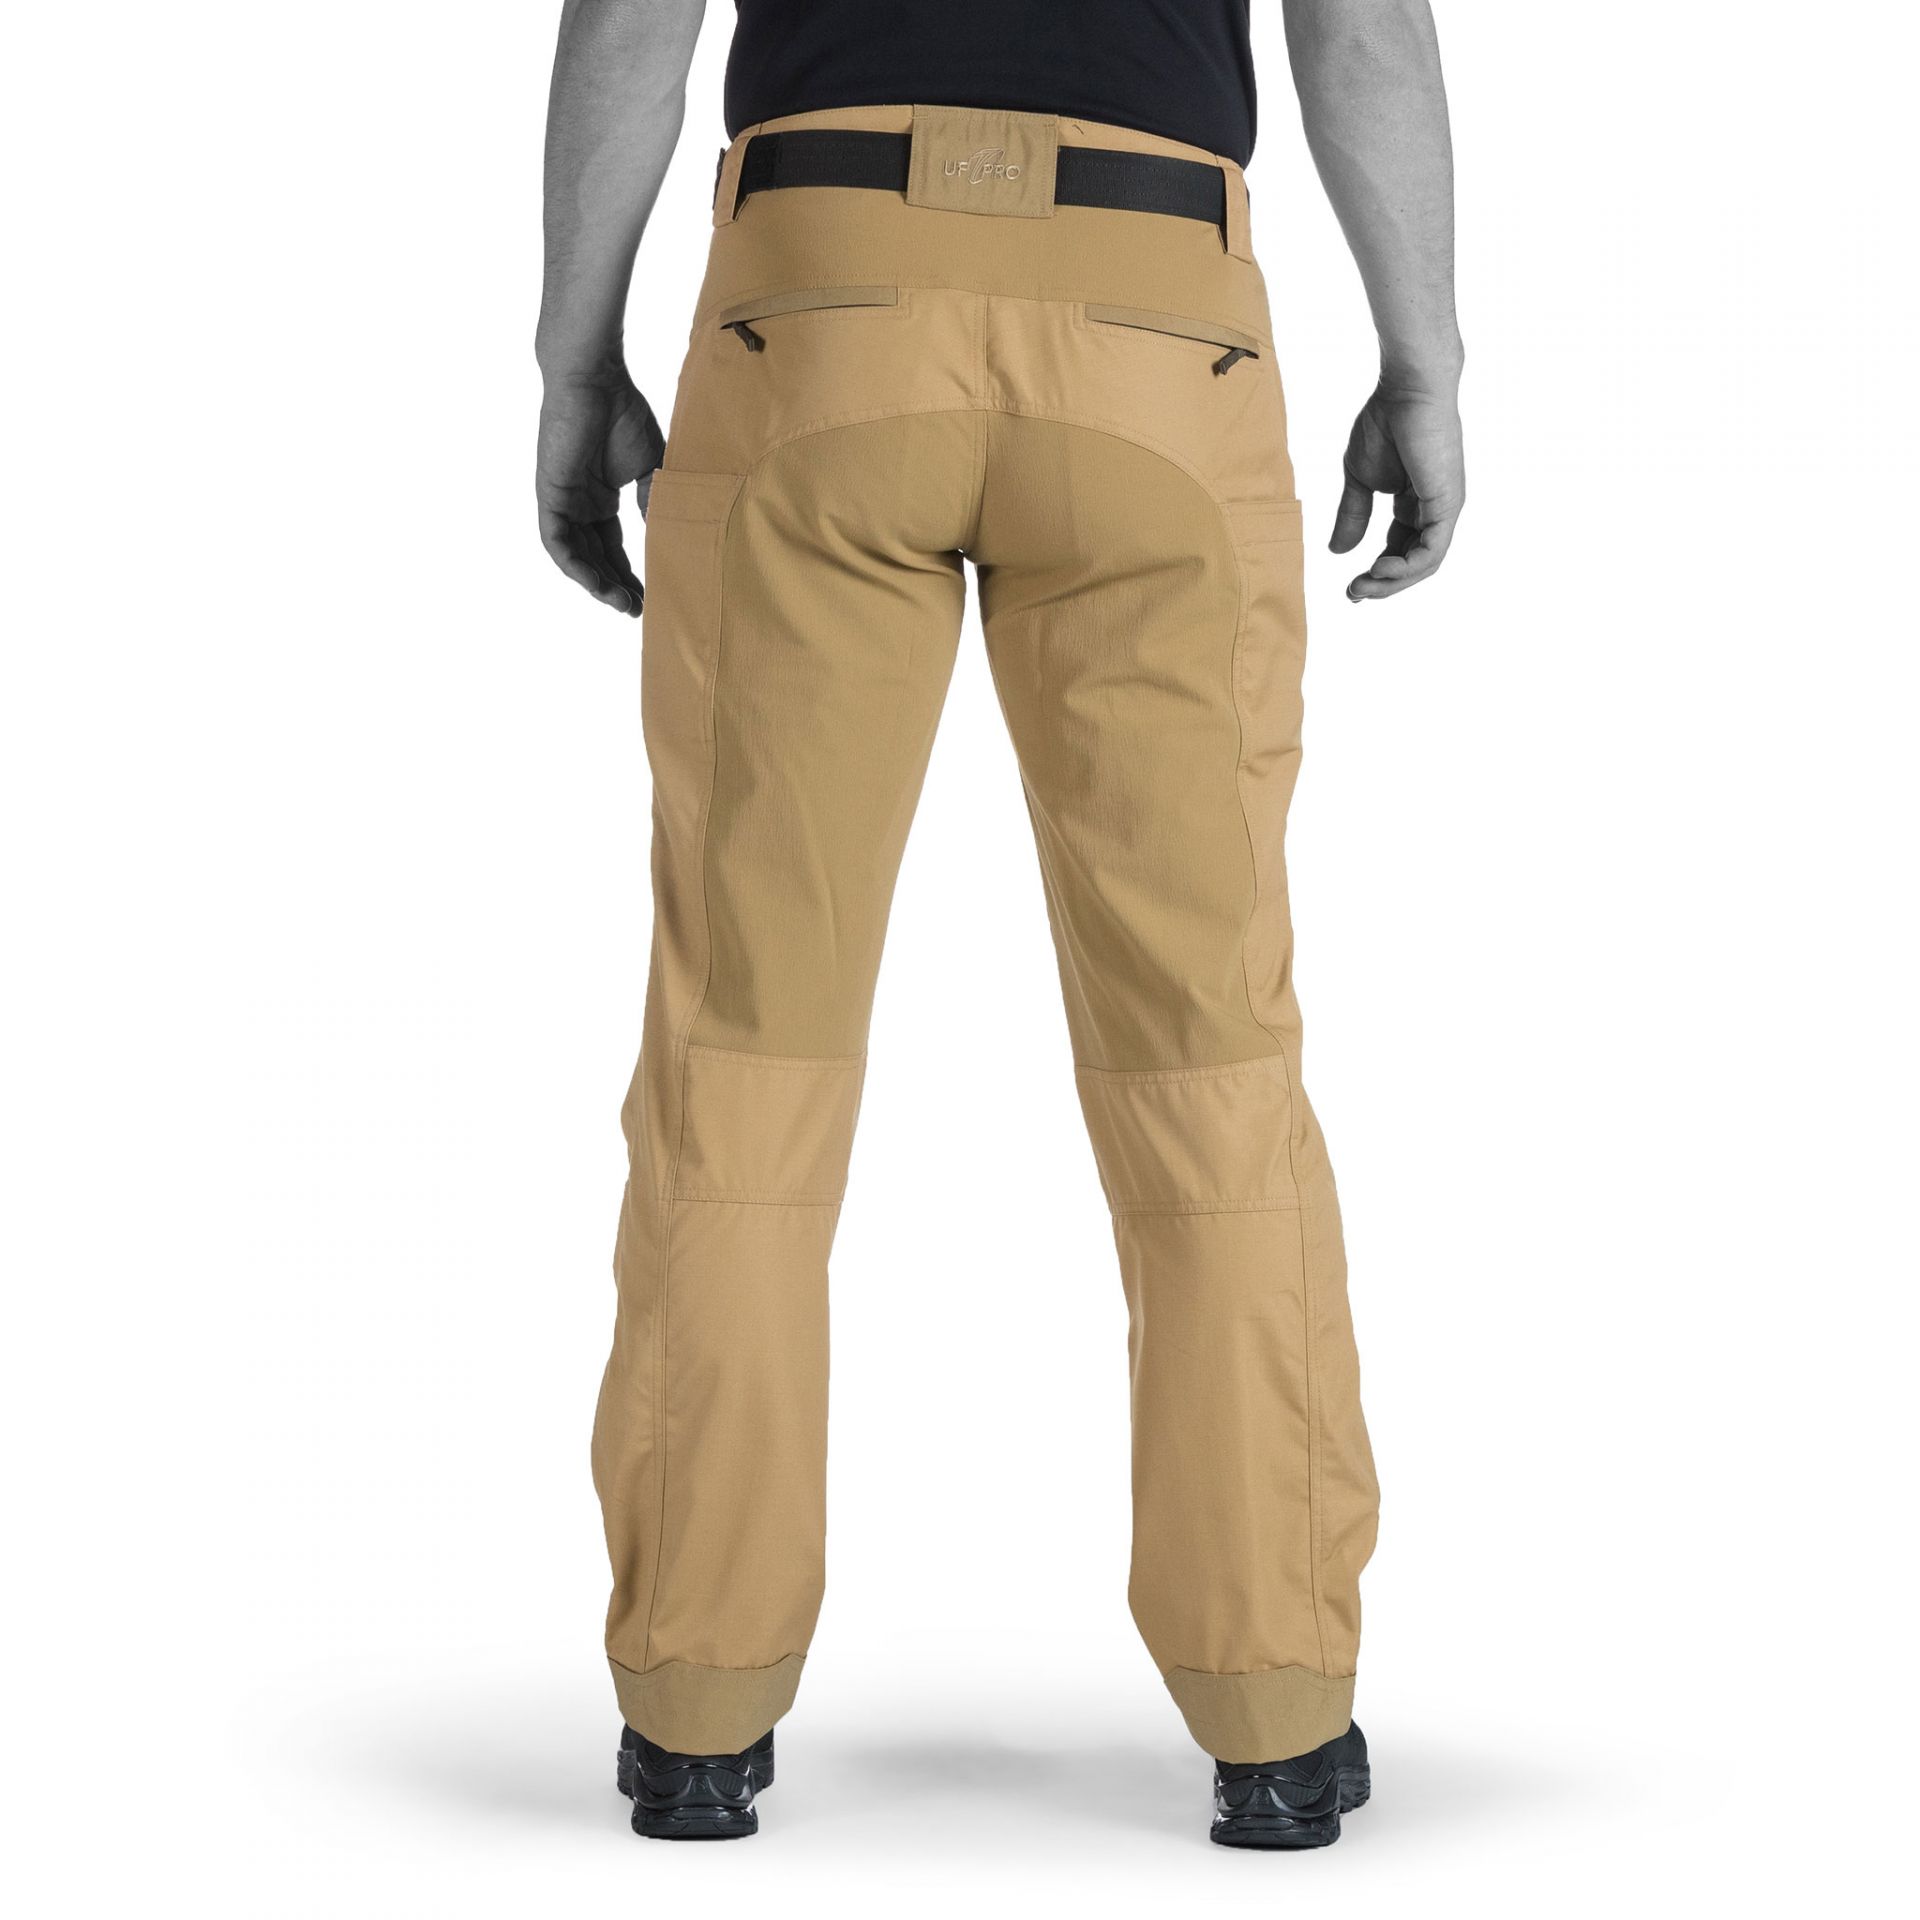 UF Pro ® P-40 Classic Tactical Pants Navy Blue Einsatzhose 